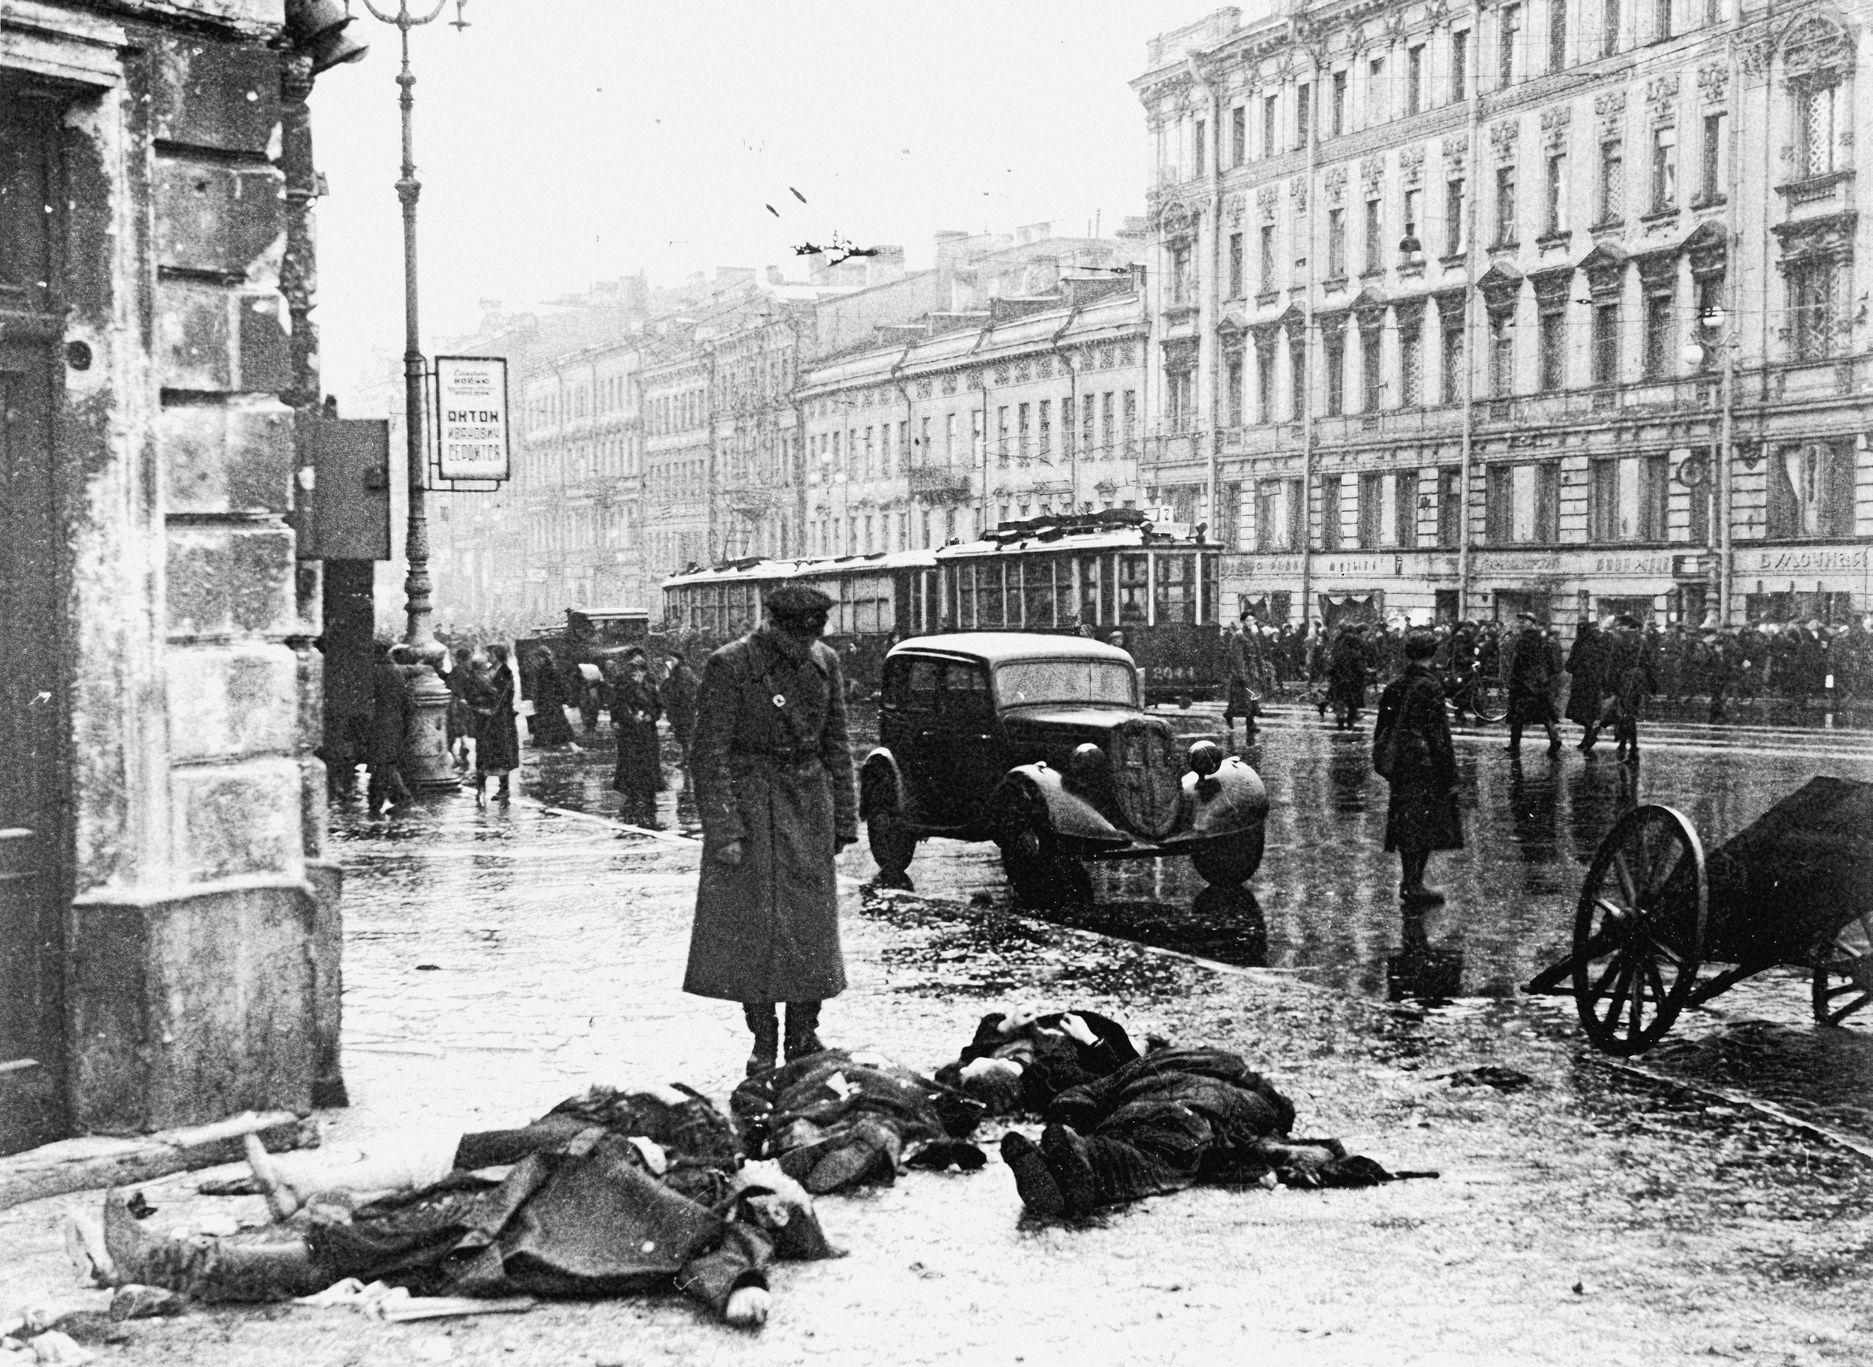 Jednorázové užití / Fotogalerie / Uplynulo 80 let od krvavého obležení Leningradu, která si vyžádala přes milion životů / Leningrad / Druhá světová válka / Obležení / Blokáda